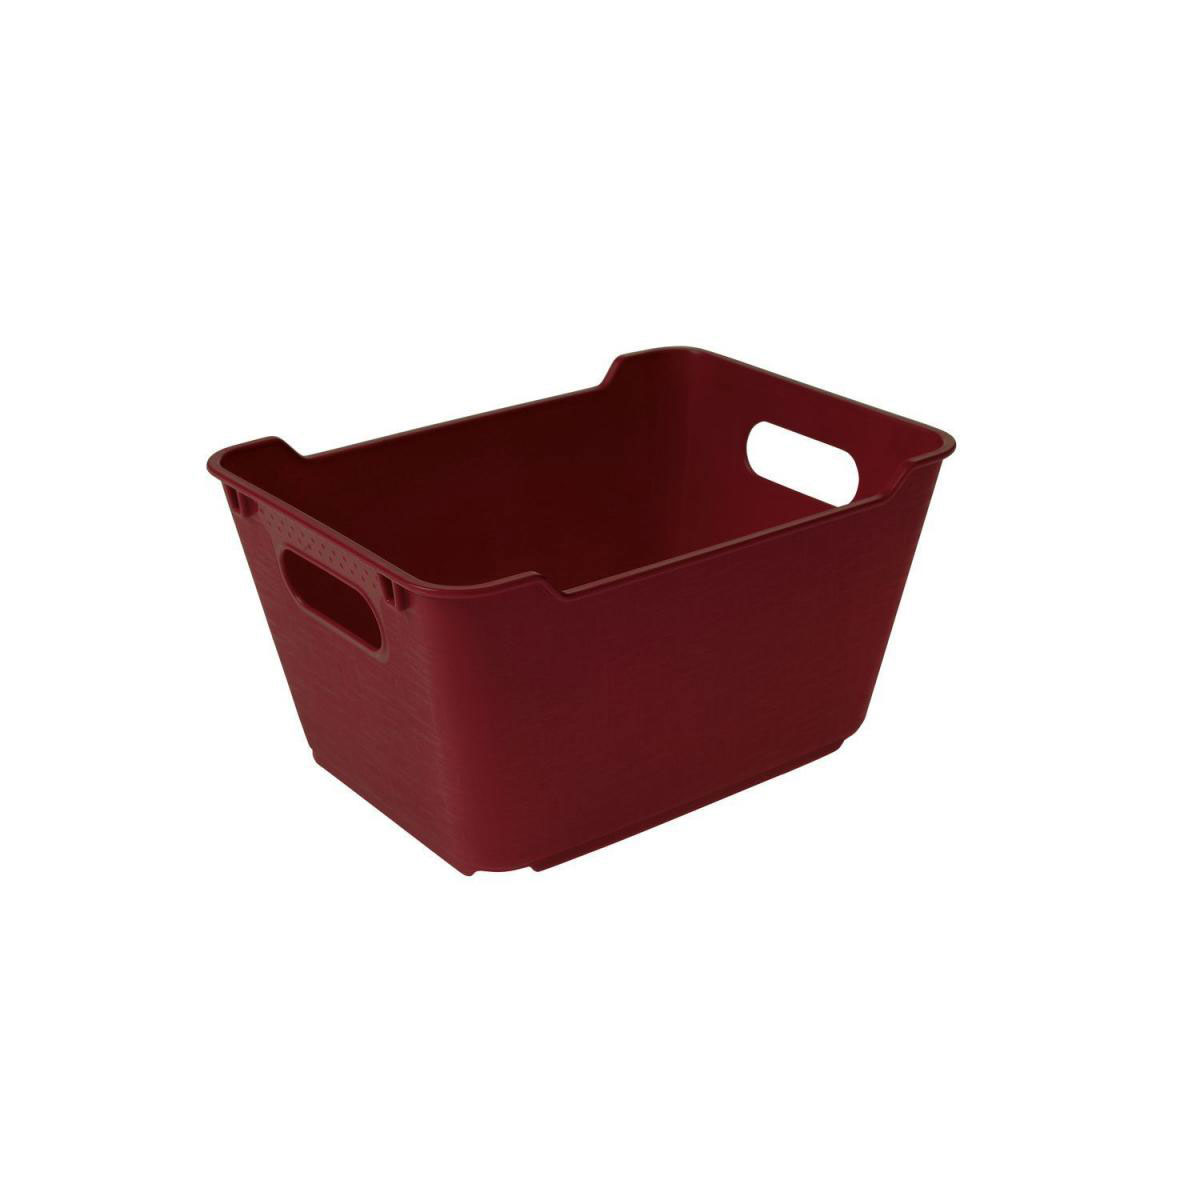 Box „Loft“, 1,8 L, red bordeaux